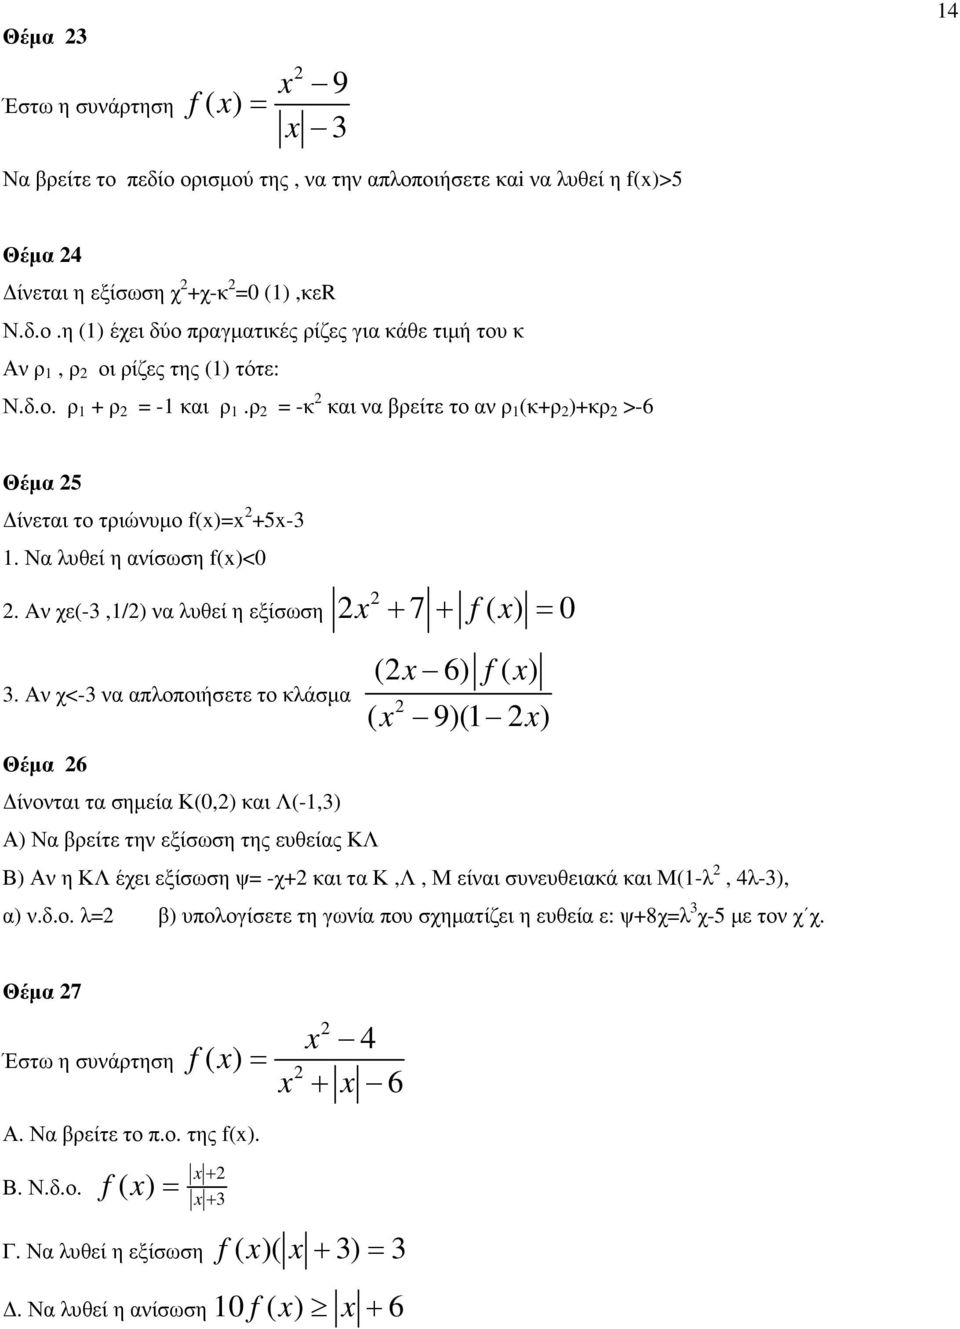 Αν χ<-3 να απλοποιήσετε το κλάσµα ( 6) ( 9)(1 ) Θέµα 6 ίνονται τα σηµεία Κ(0,) και Λ(-1,3) Α) Να βρείτε την εξίσωση της ευθείας ΚΛ Β) Αν η ΚΛ έχει εξίσωση ψ -χ+ και τα Κ,Λ, Μ είναι συνευθειακά και